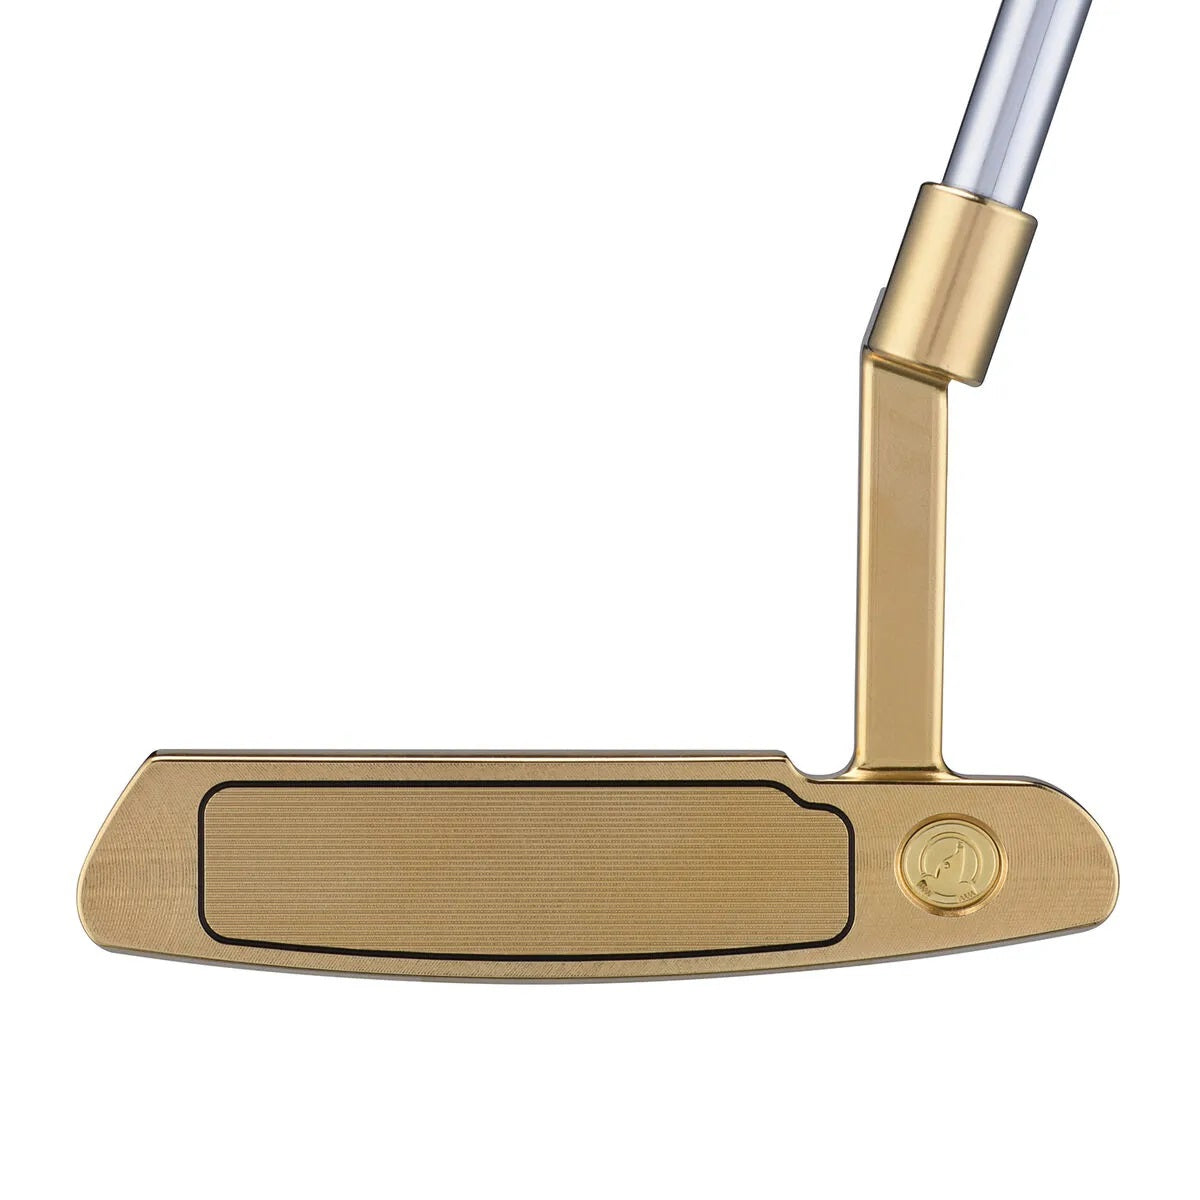 HONMA BERES PP-201 PUTTER GOLD PLATED - Par-Tee Golf